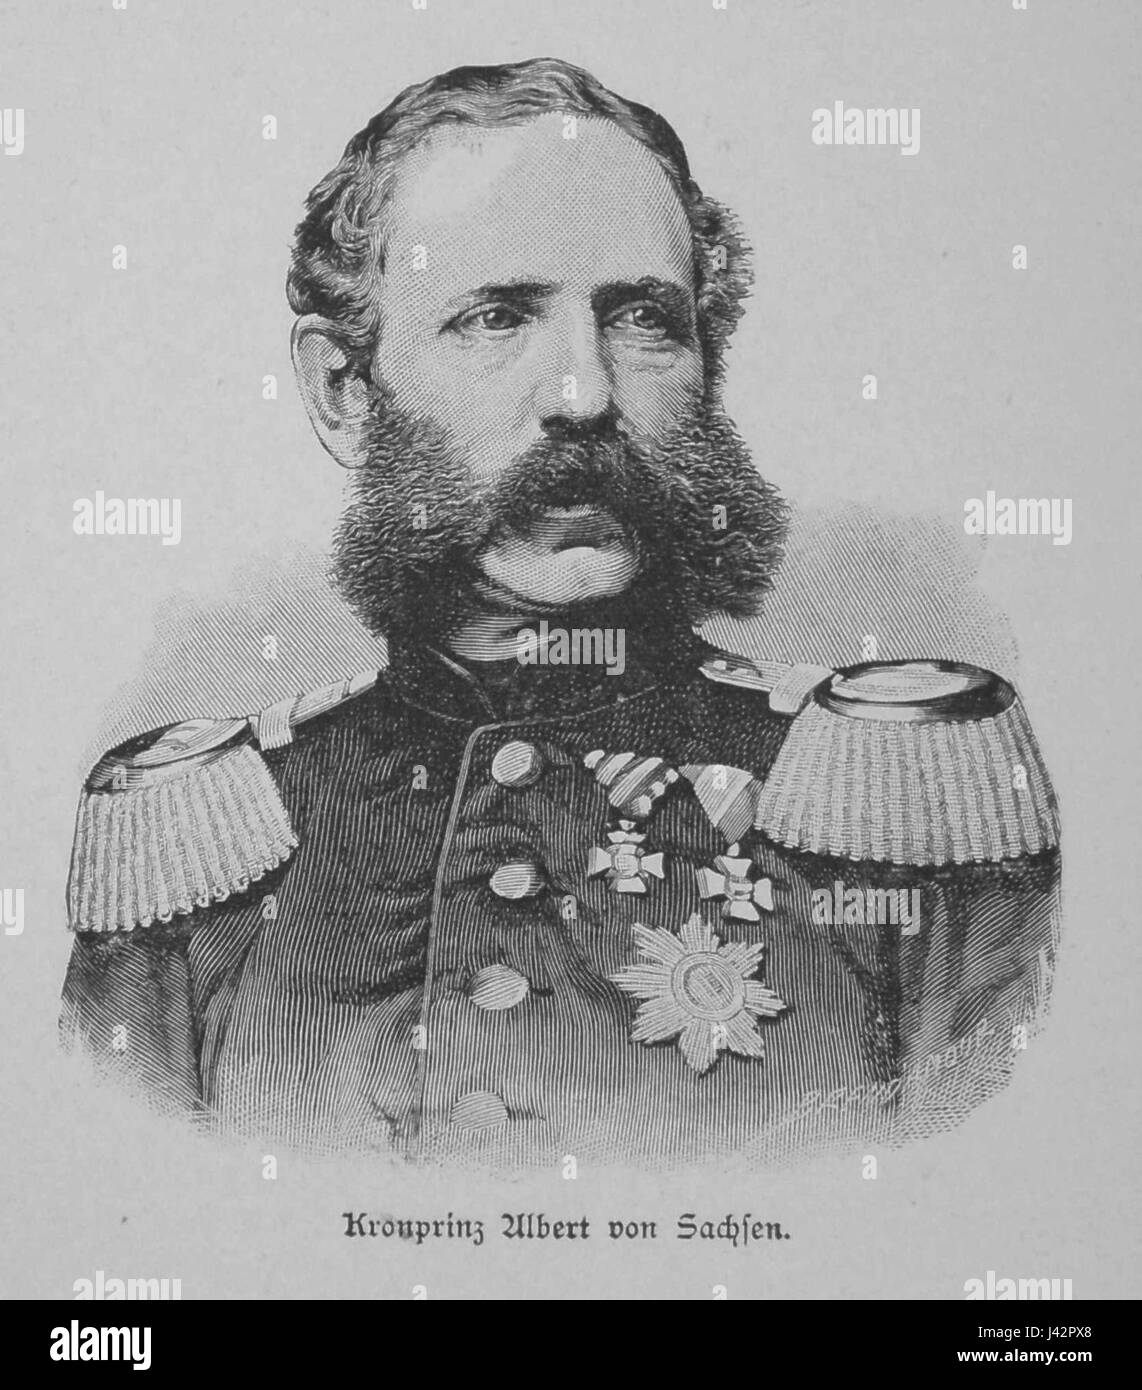 Kronprinz Albert von Sachsen Stock Photo